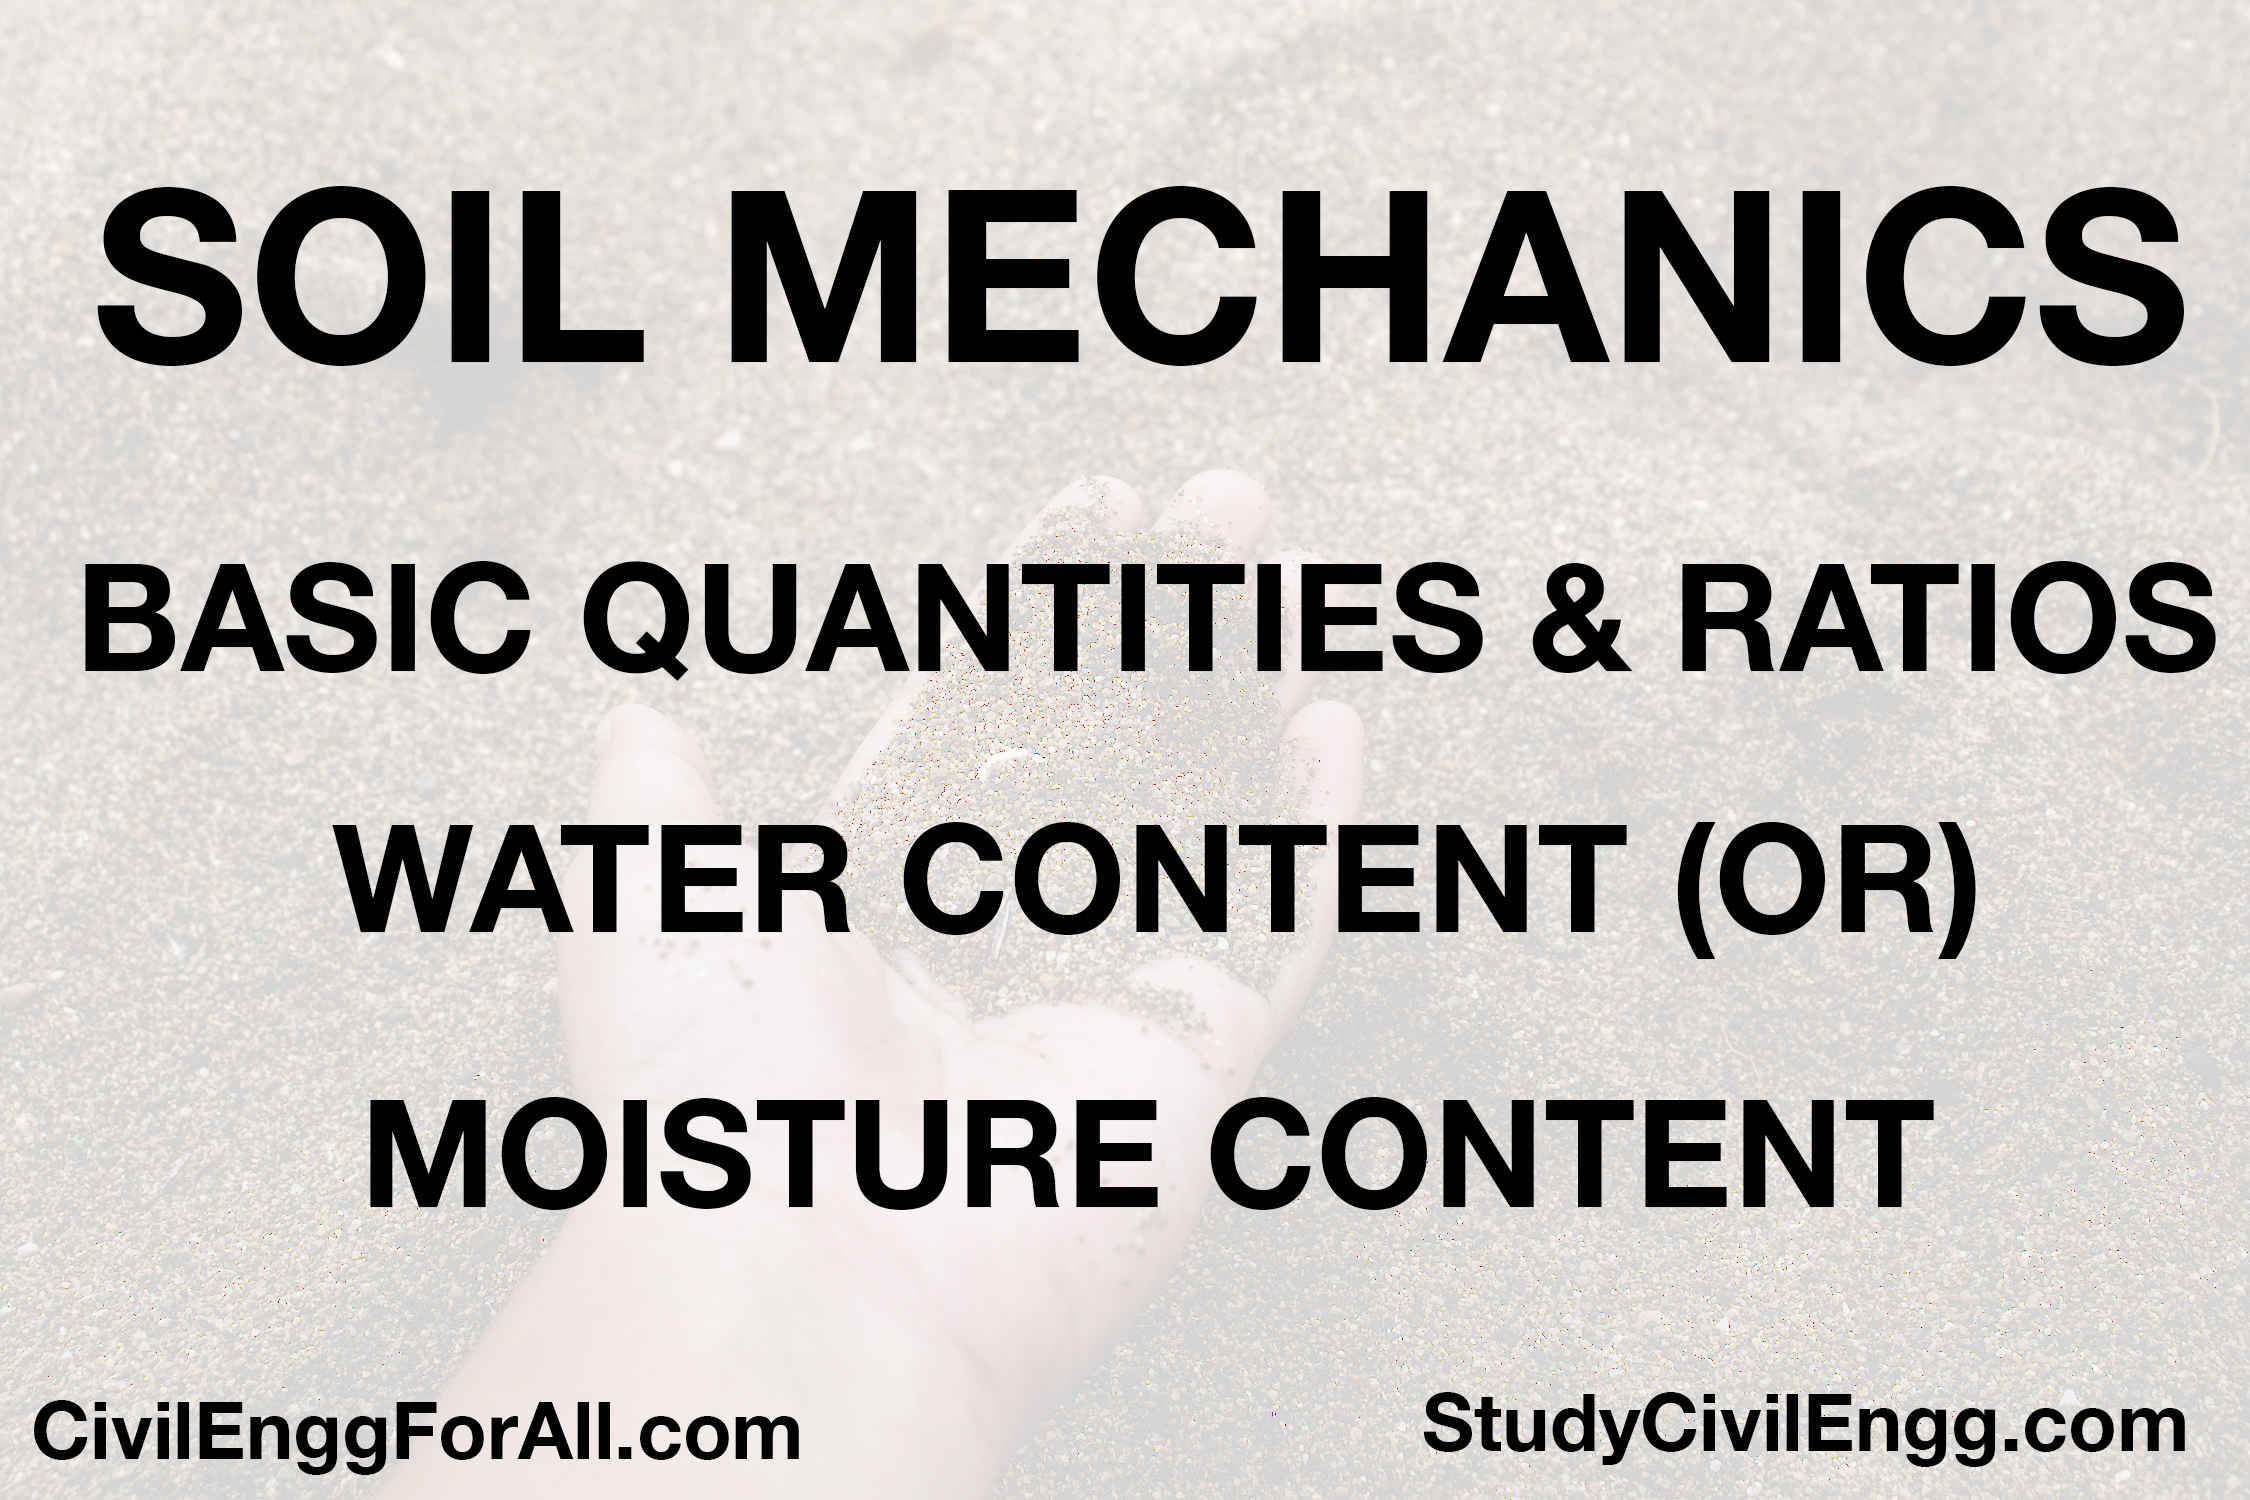 Water Content or Moisture Content- Soil Mechanics - StudyCivilEngg.com